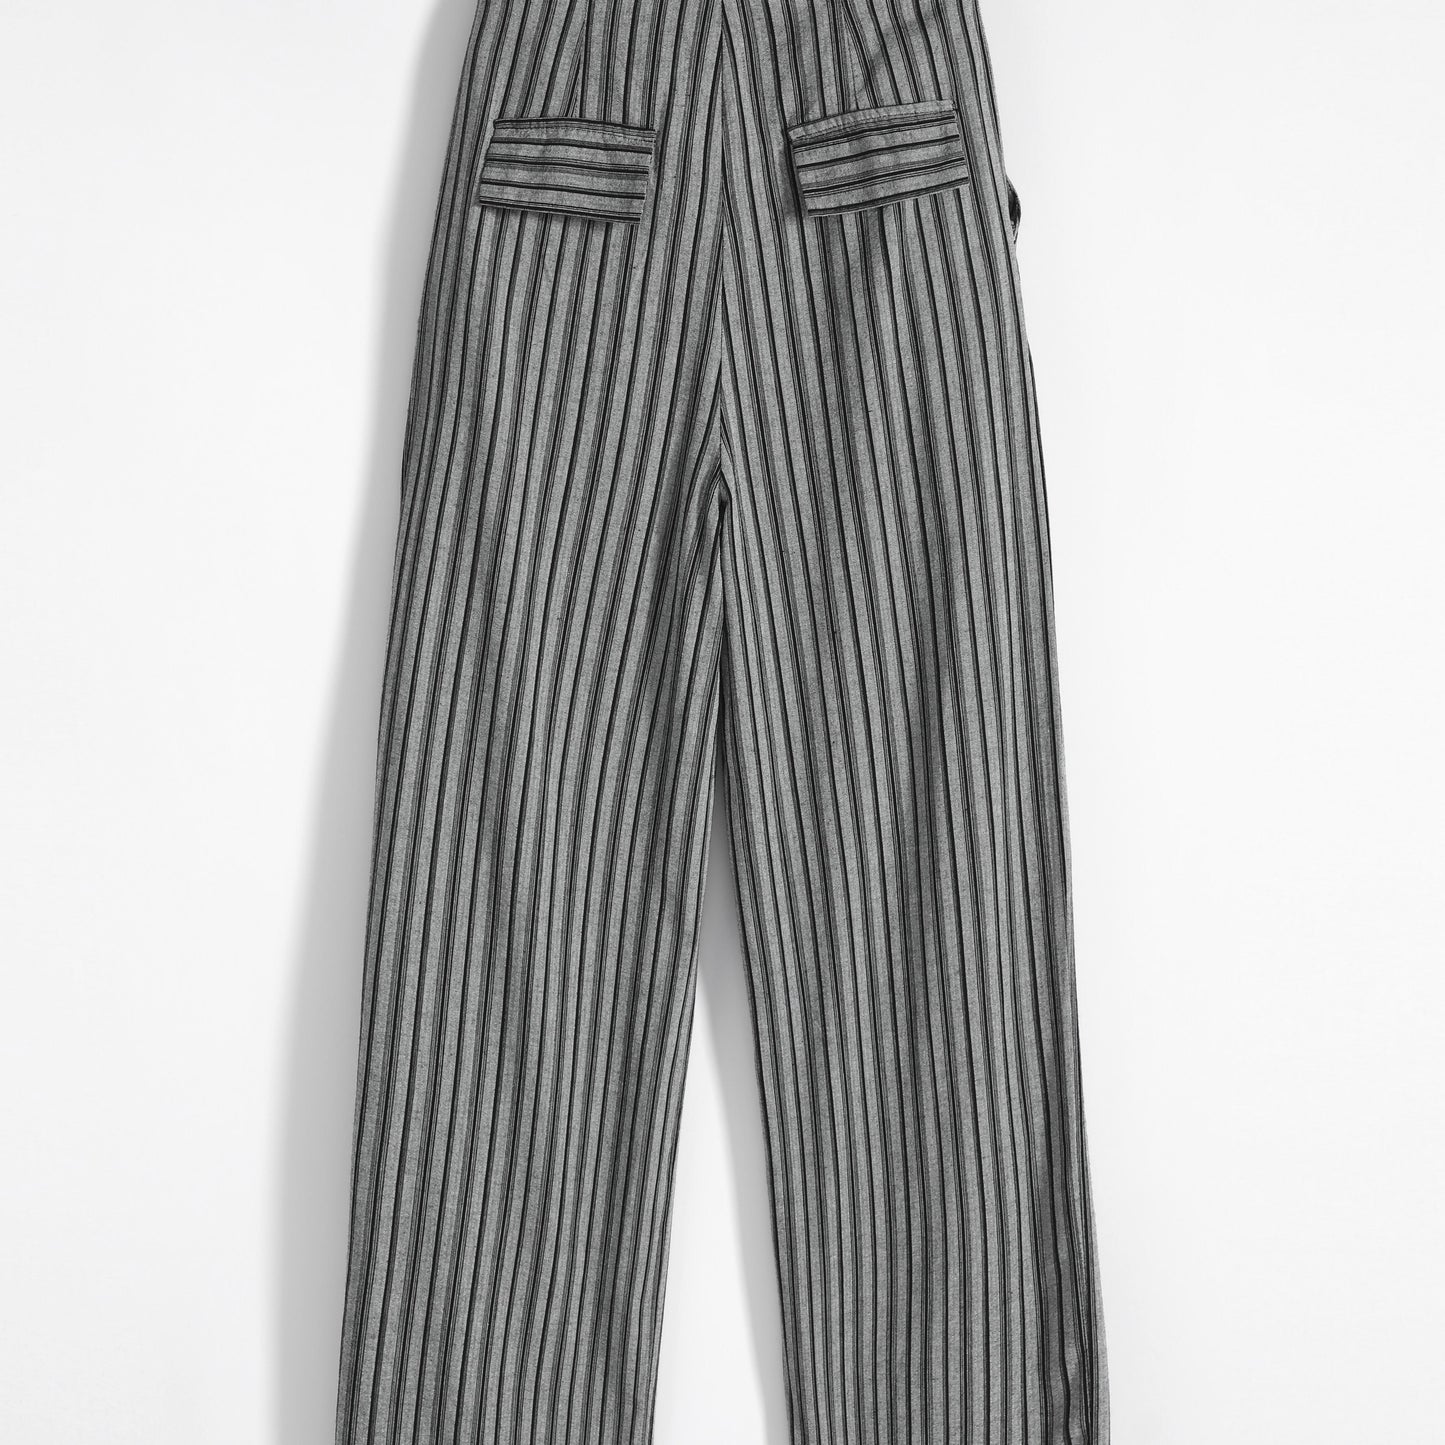 Pantalon ample à taille haute, droit, à rayures, avec cordon